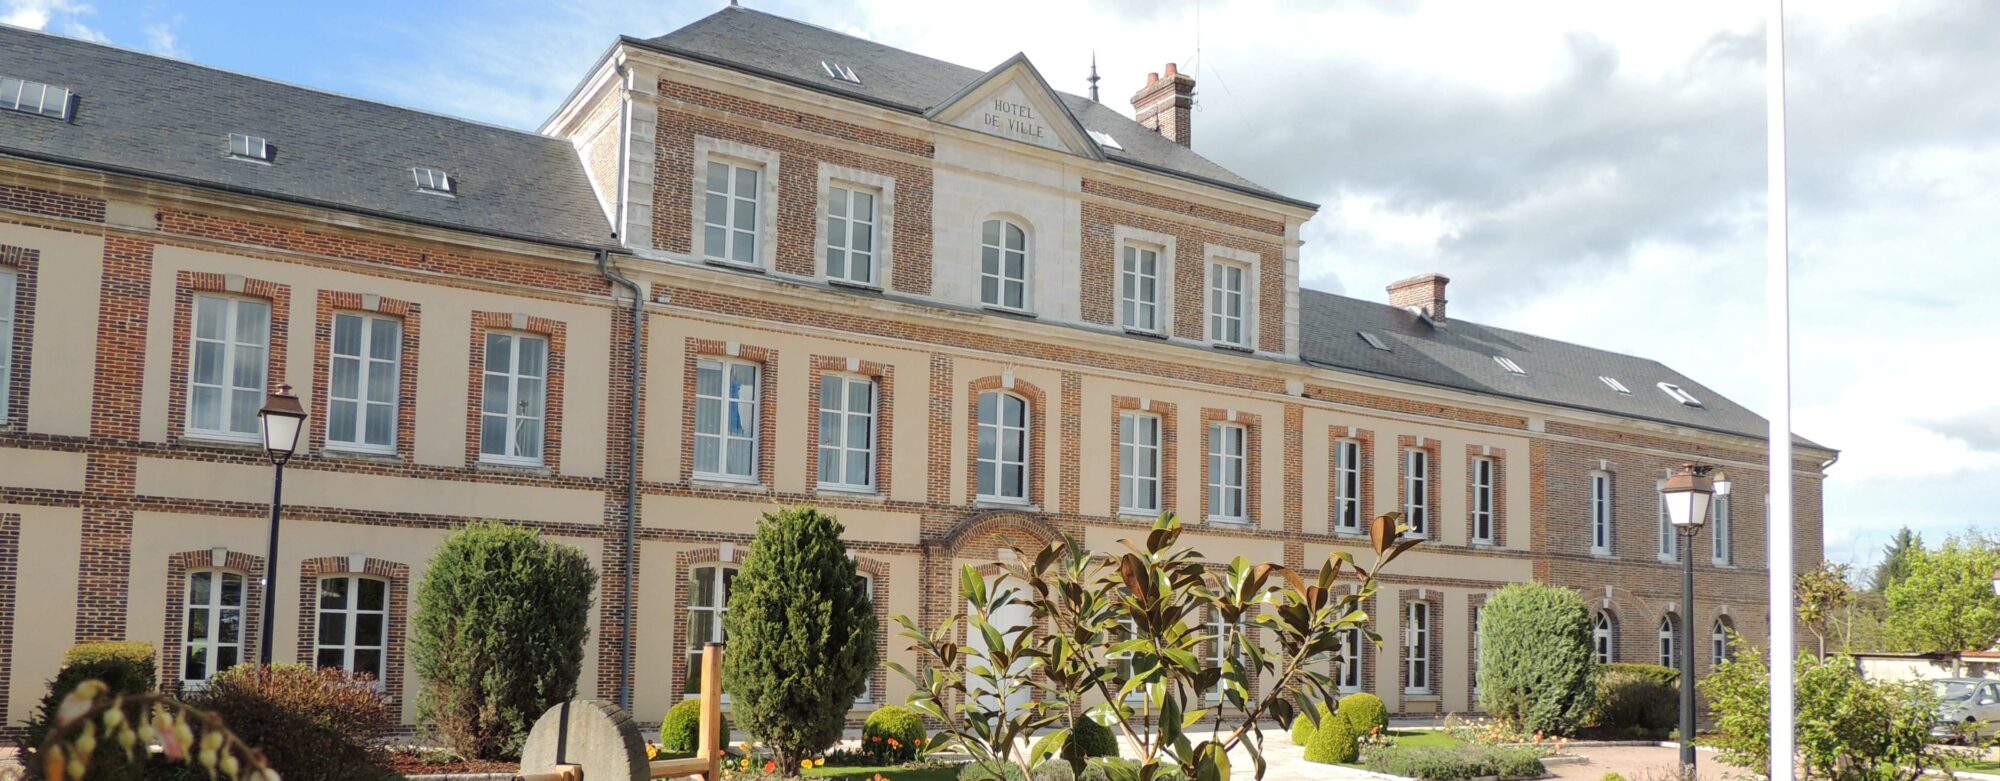 Mairie Damville (Mesnils-sur-iton)-Bandeau